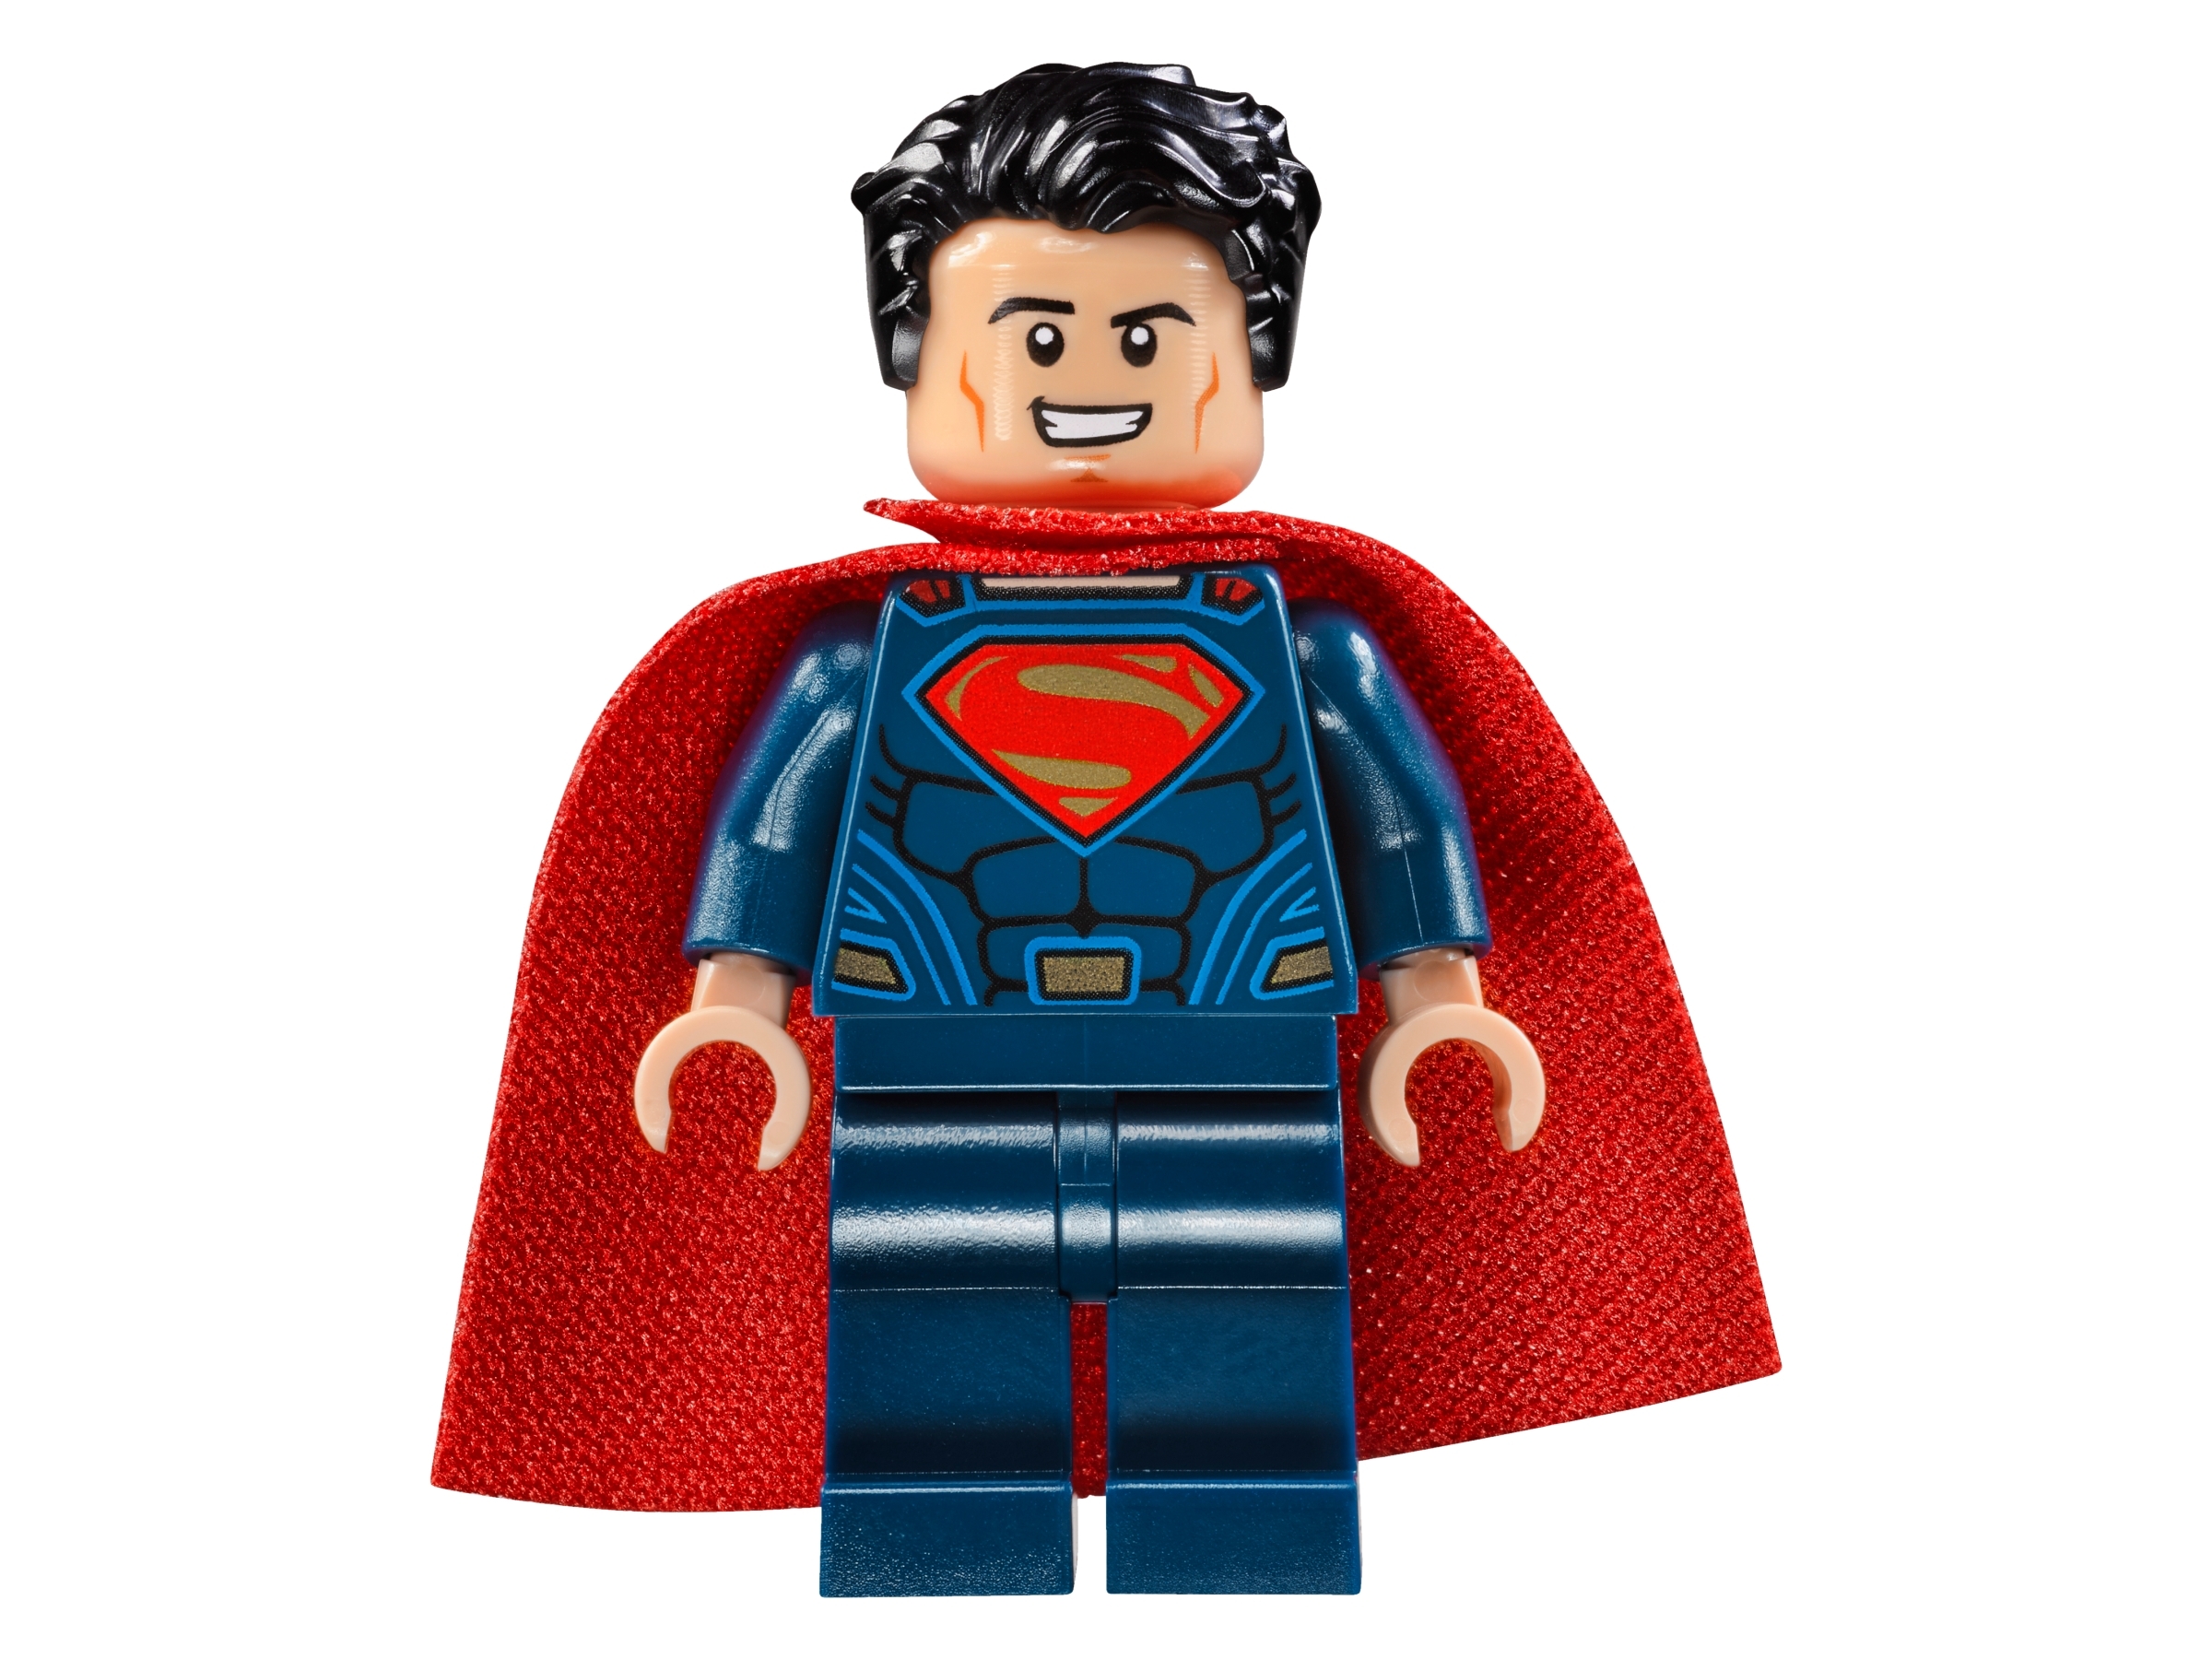 76044 CLASH OF THE HEROES lego NEW dc super LEGOS set BATMAN SUPERMAN